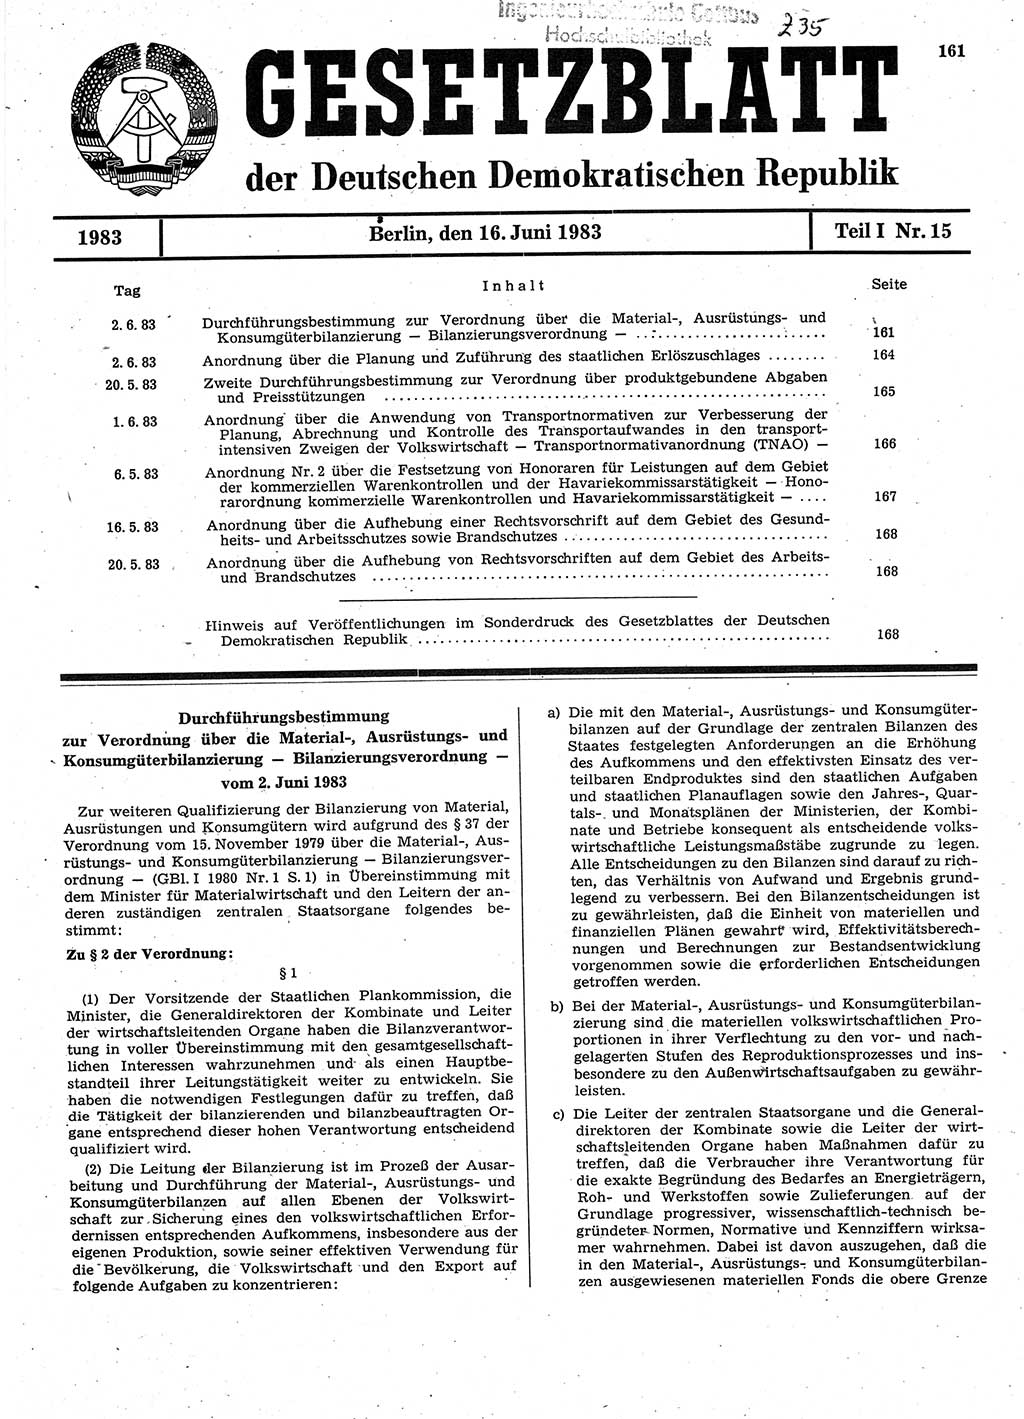 Gesetzblatt (GBl.) der Deutschen Demokratischen Republik (DDR) Teil Ⅰ 1983, Seite 161 (GBl. DDR Ⅰ 1983, S. 161)